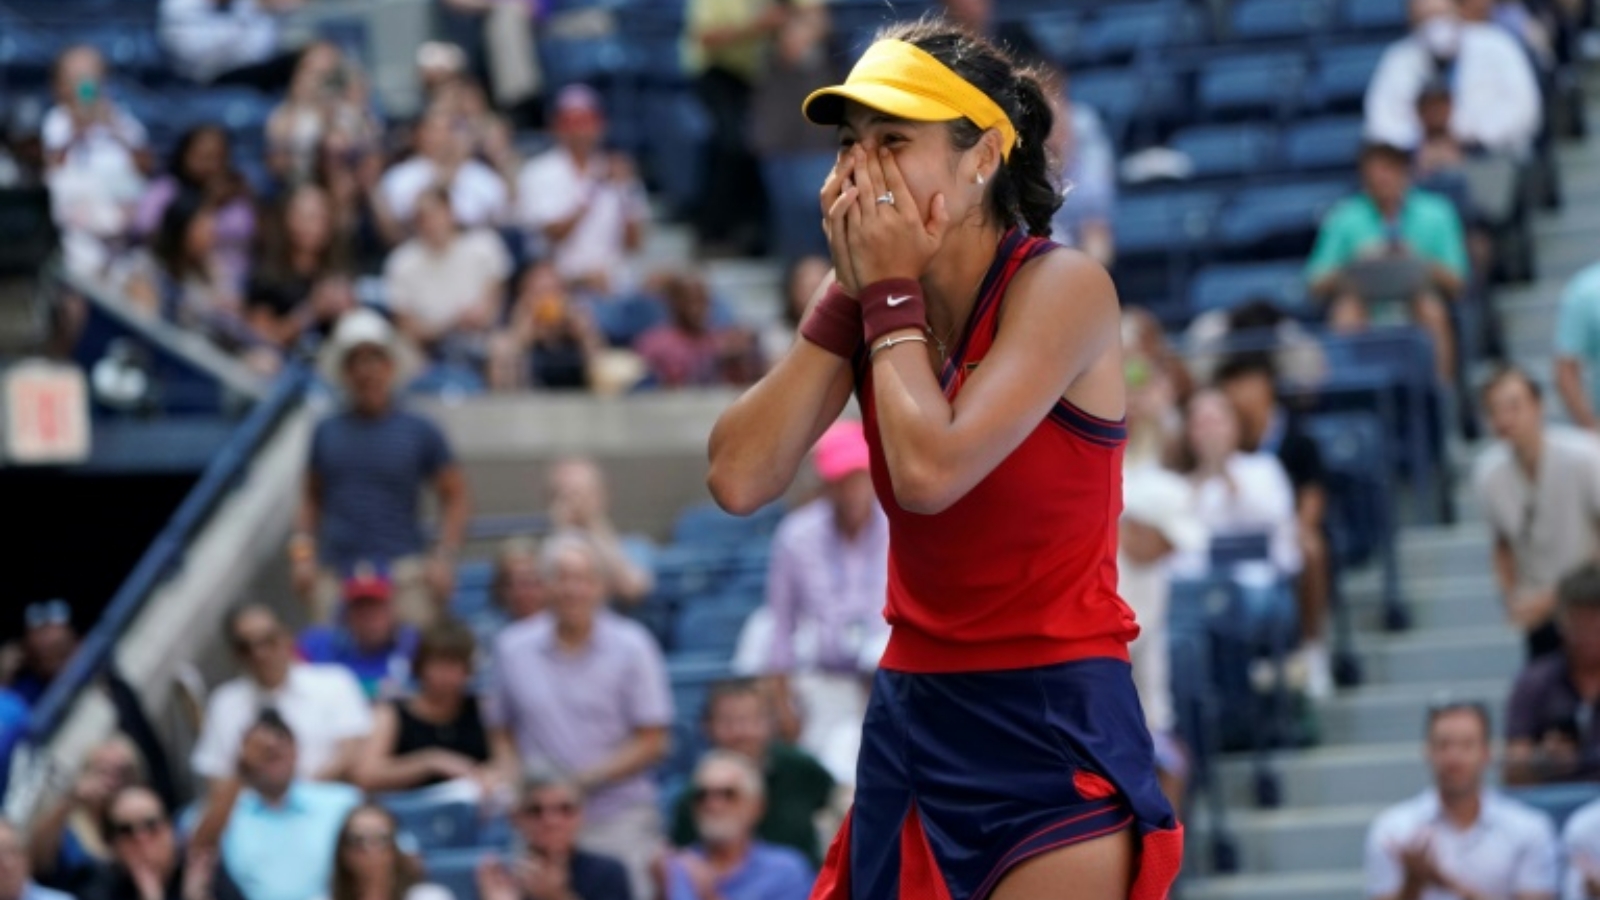 البريطانية إيما رادوكانو تحتفل بفوزها في الدور ربع النهائي من بطولة الولايات المتحدة لكرة المضرب. بتاريخ 8 أيلول/ سبتمبر 2021.